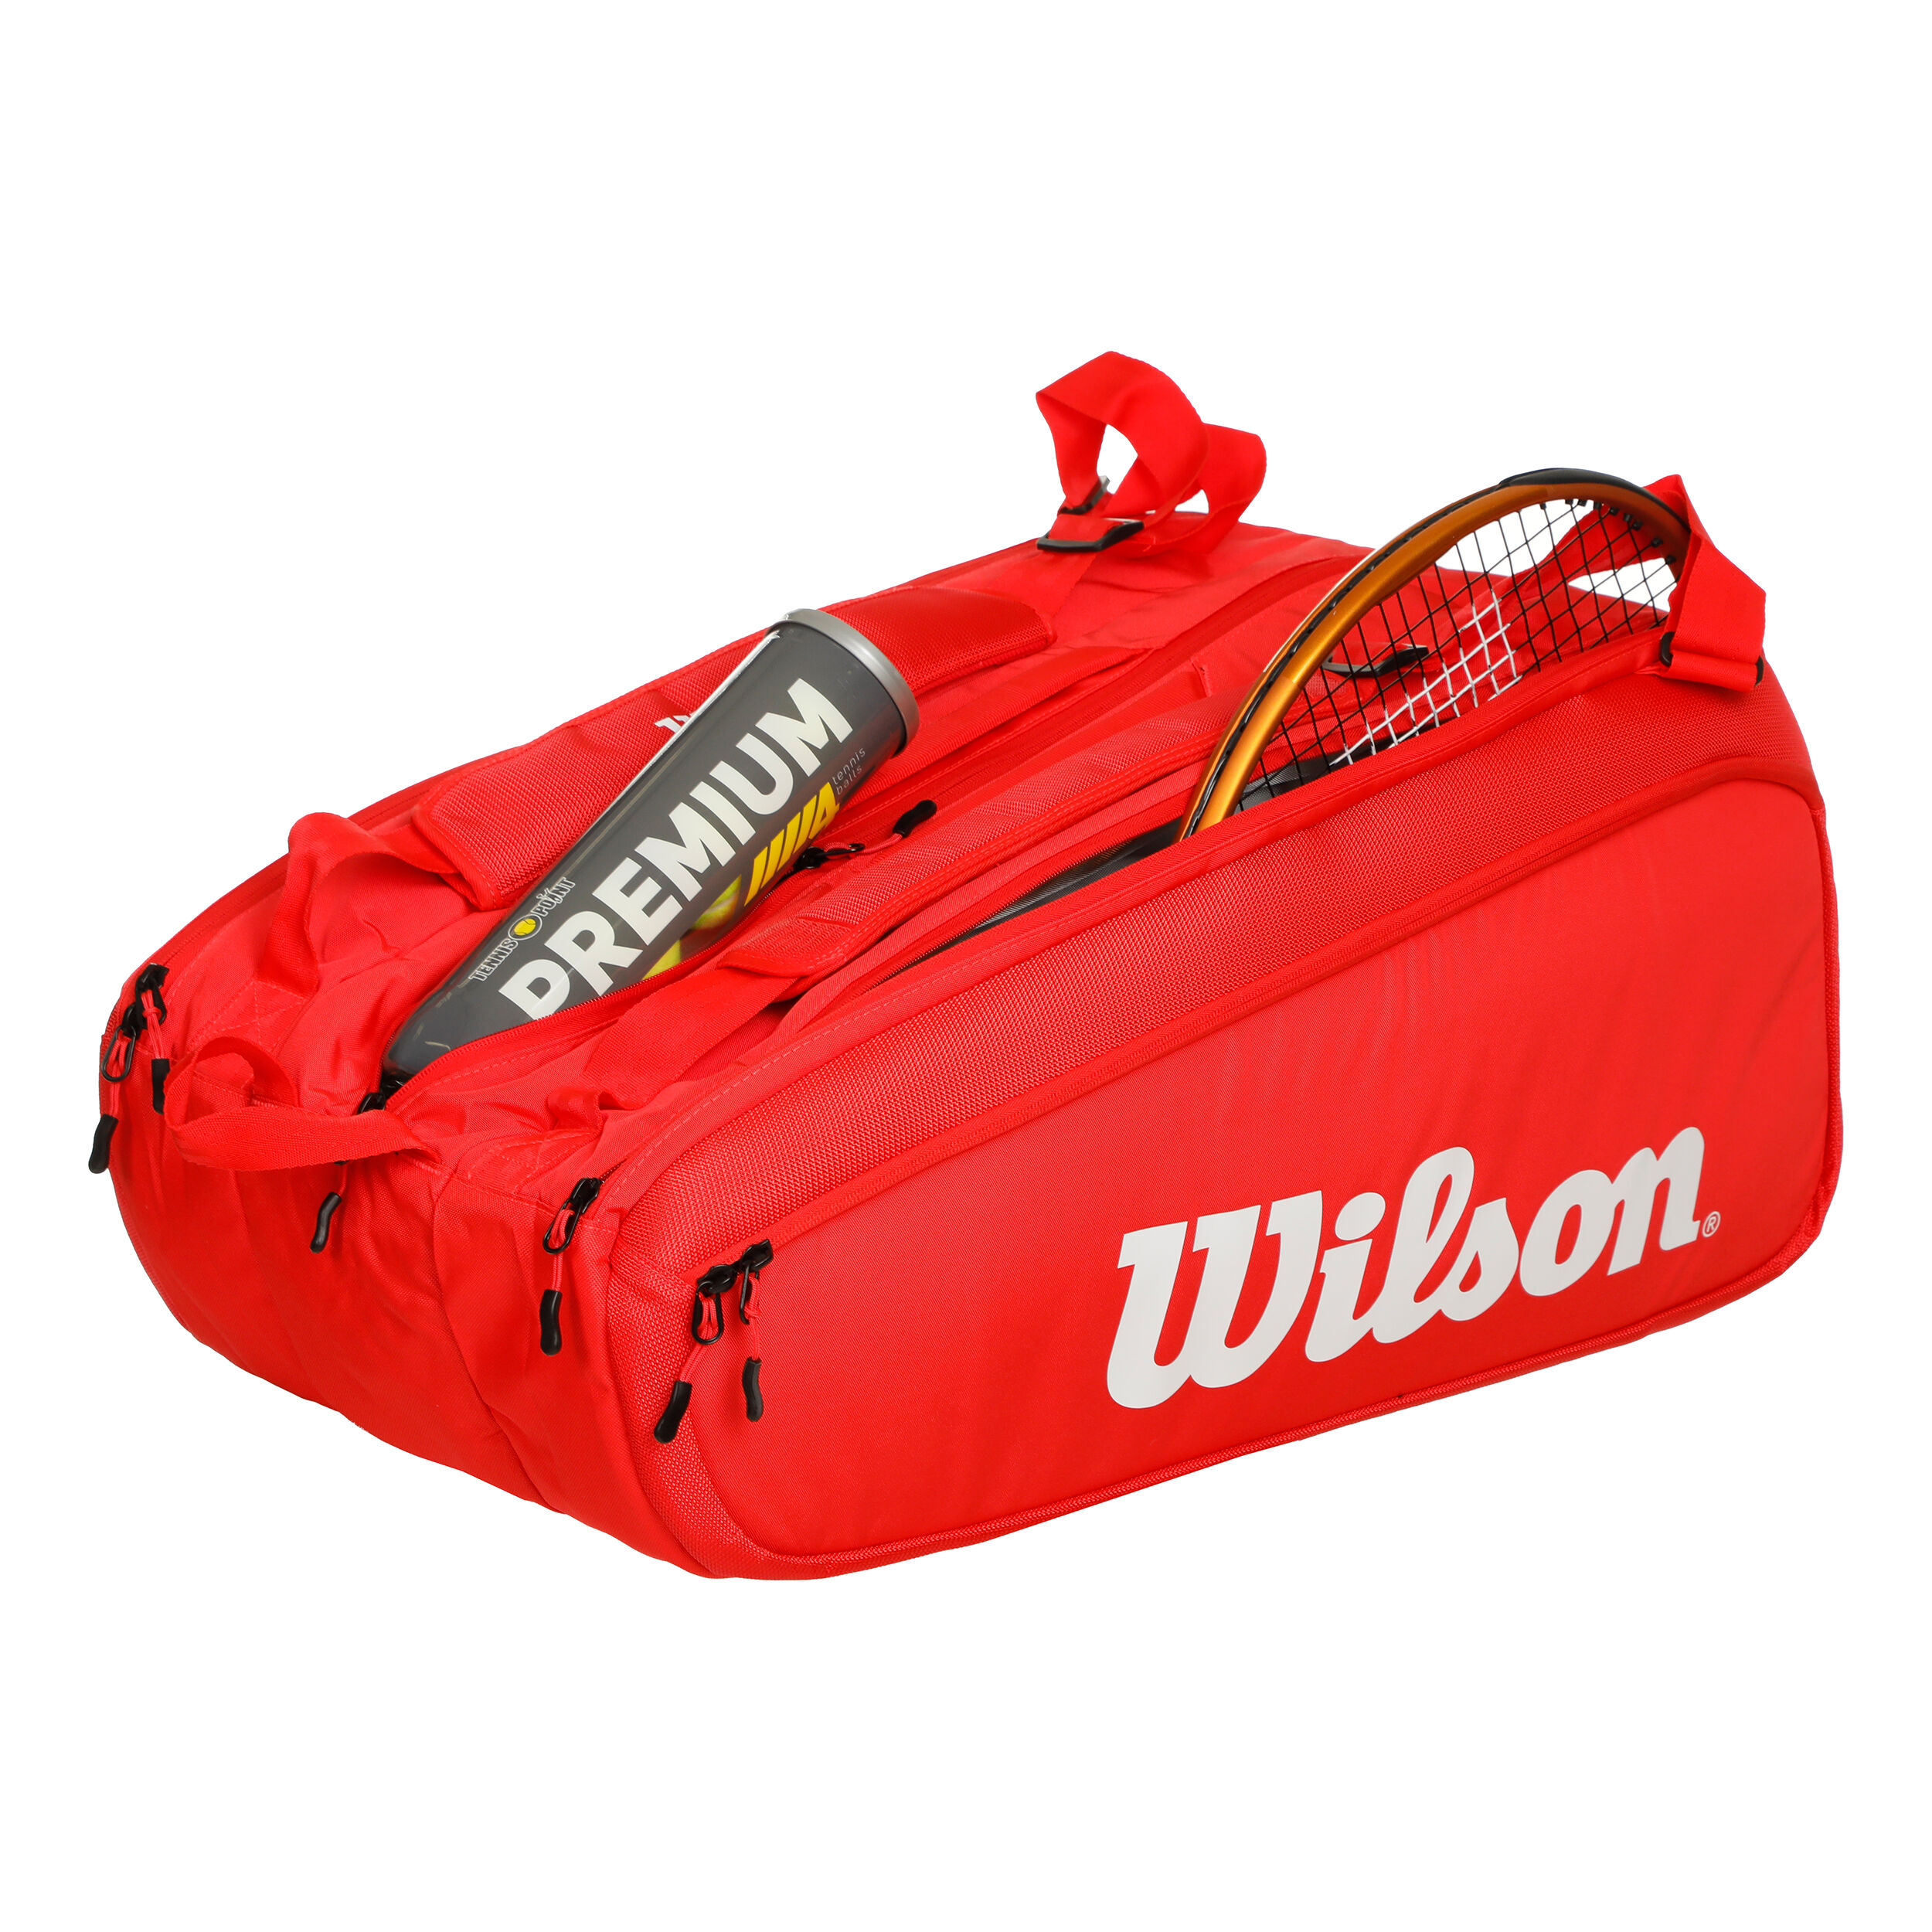 Super Tour Racket Bag 15 Pack - Red